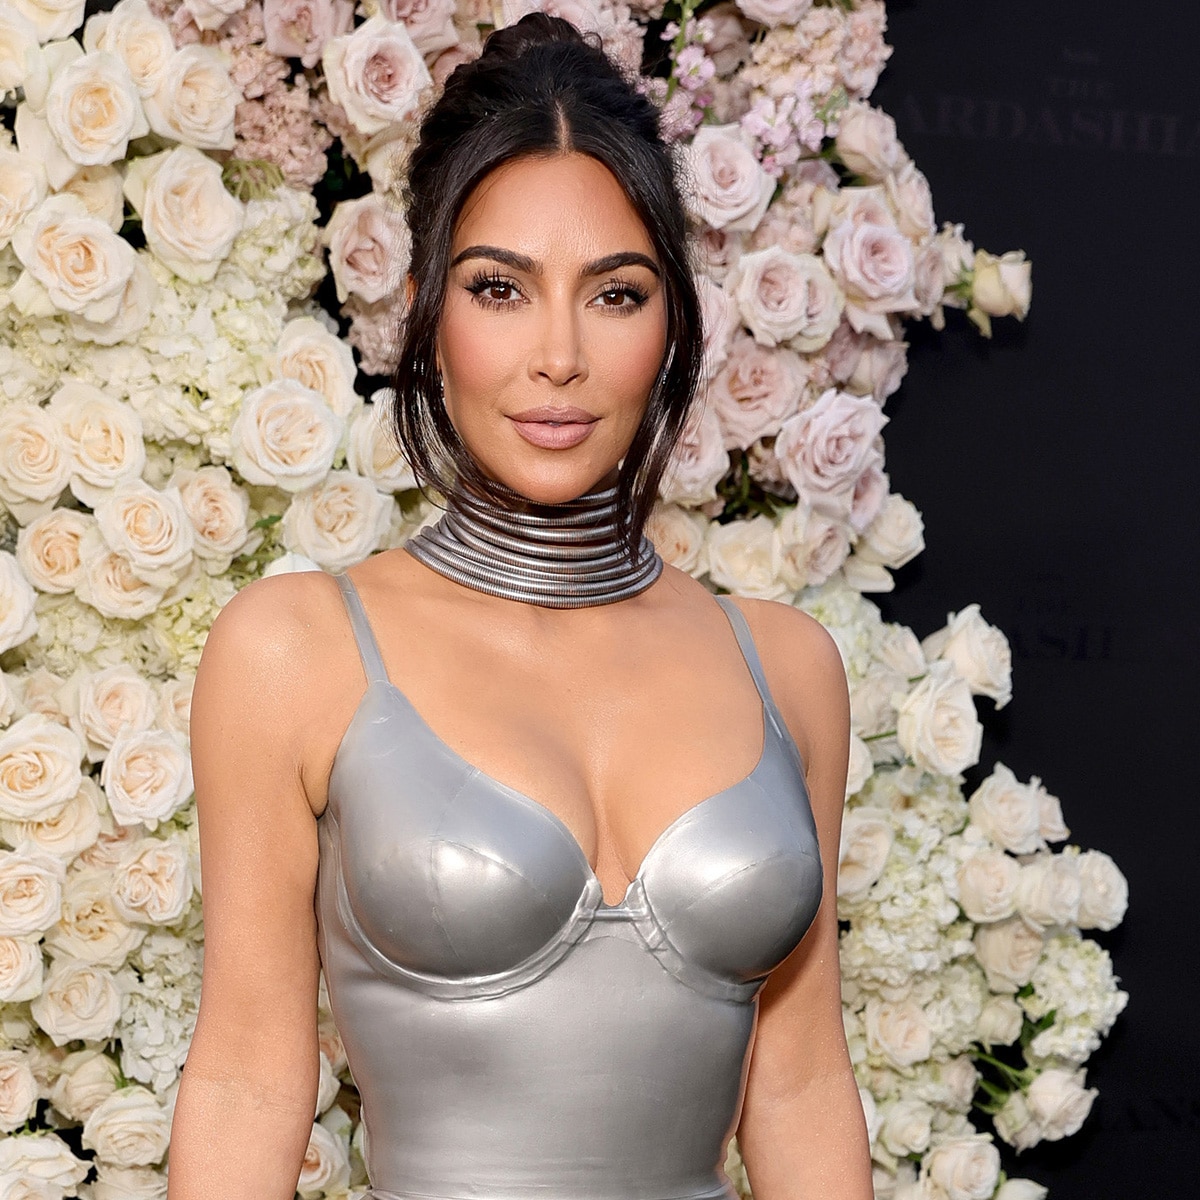 Kim Kardashian, The Kardashians premiere 2022